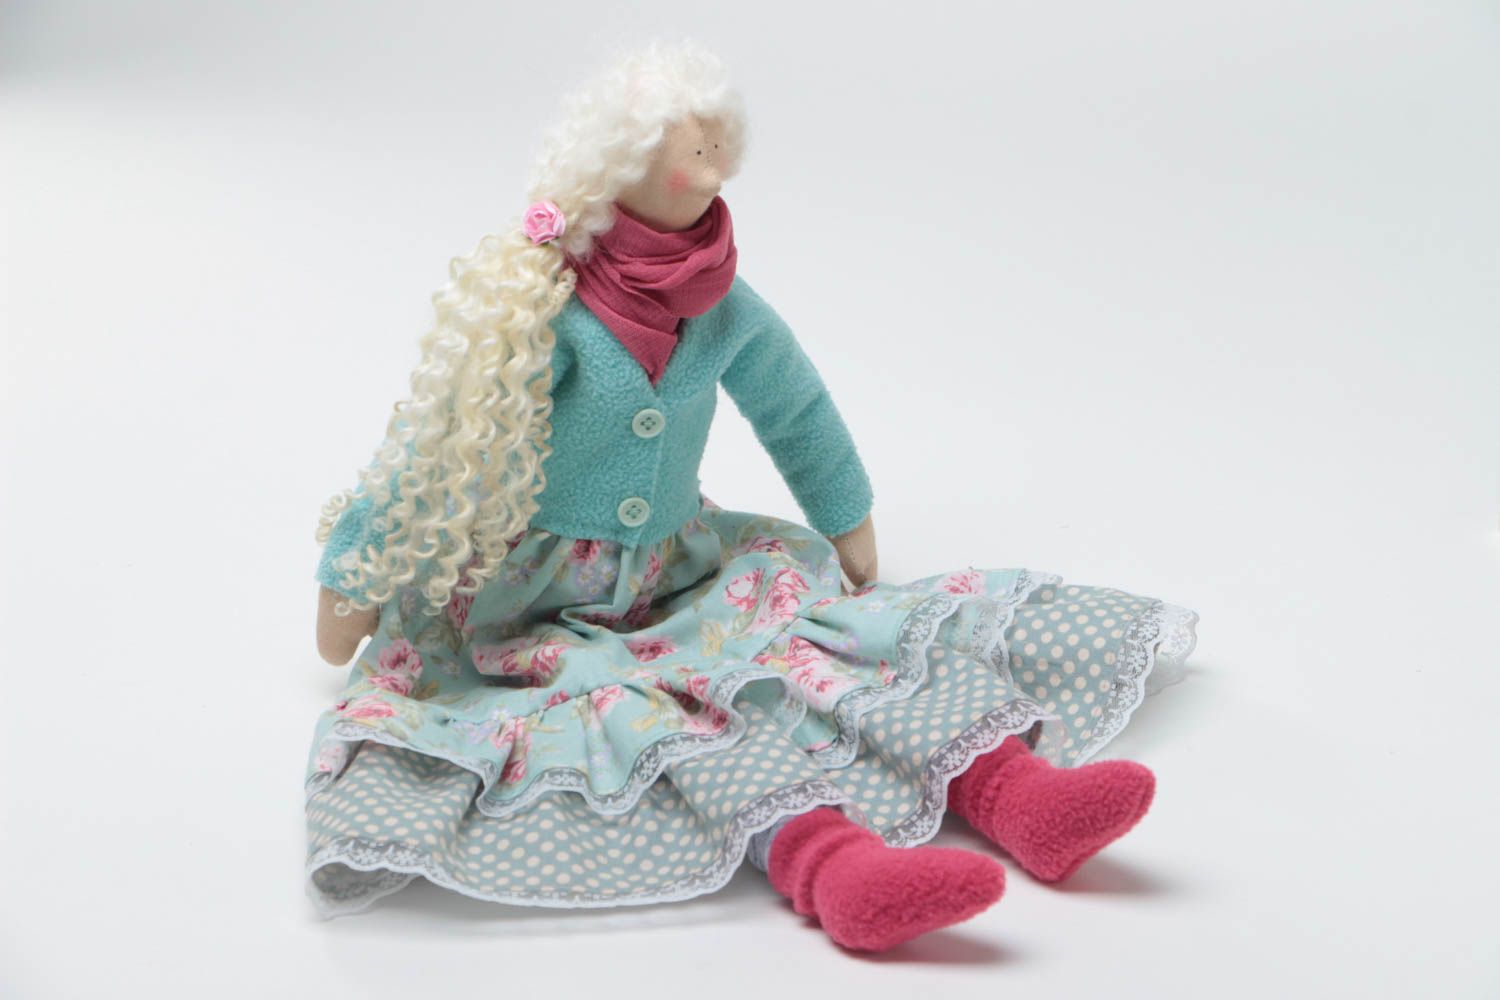 Игрушка кукла из ткани в голубом платье с белыми волосами красивая ручной работы фото 2